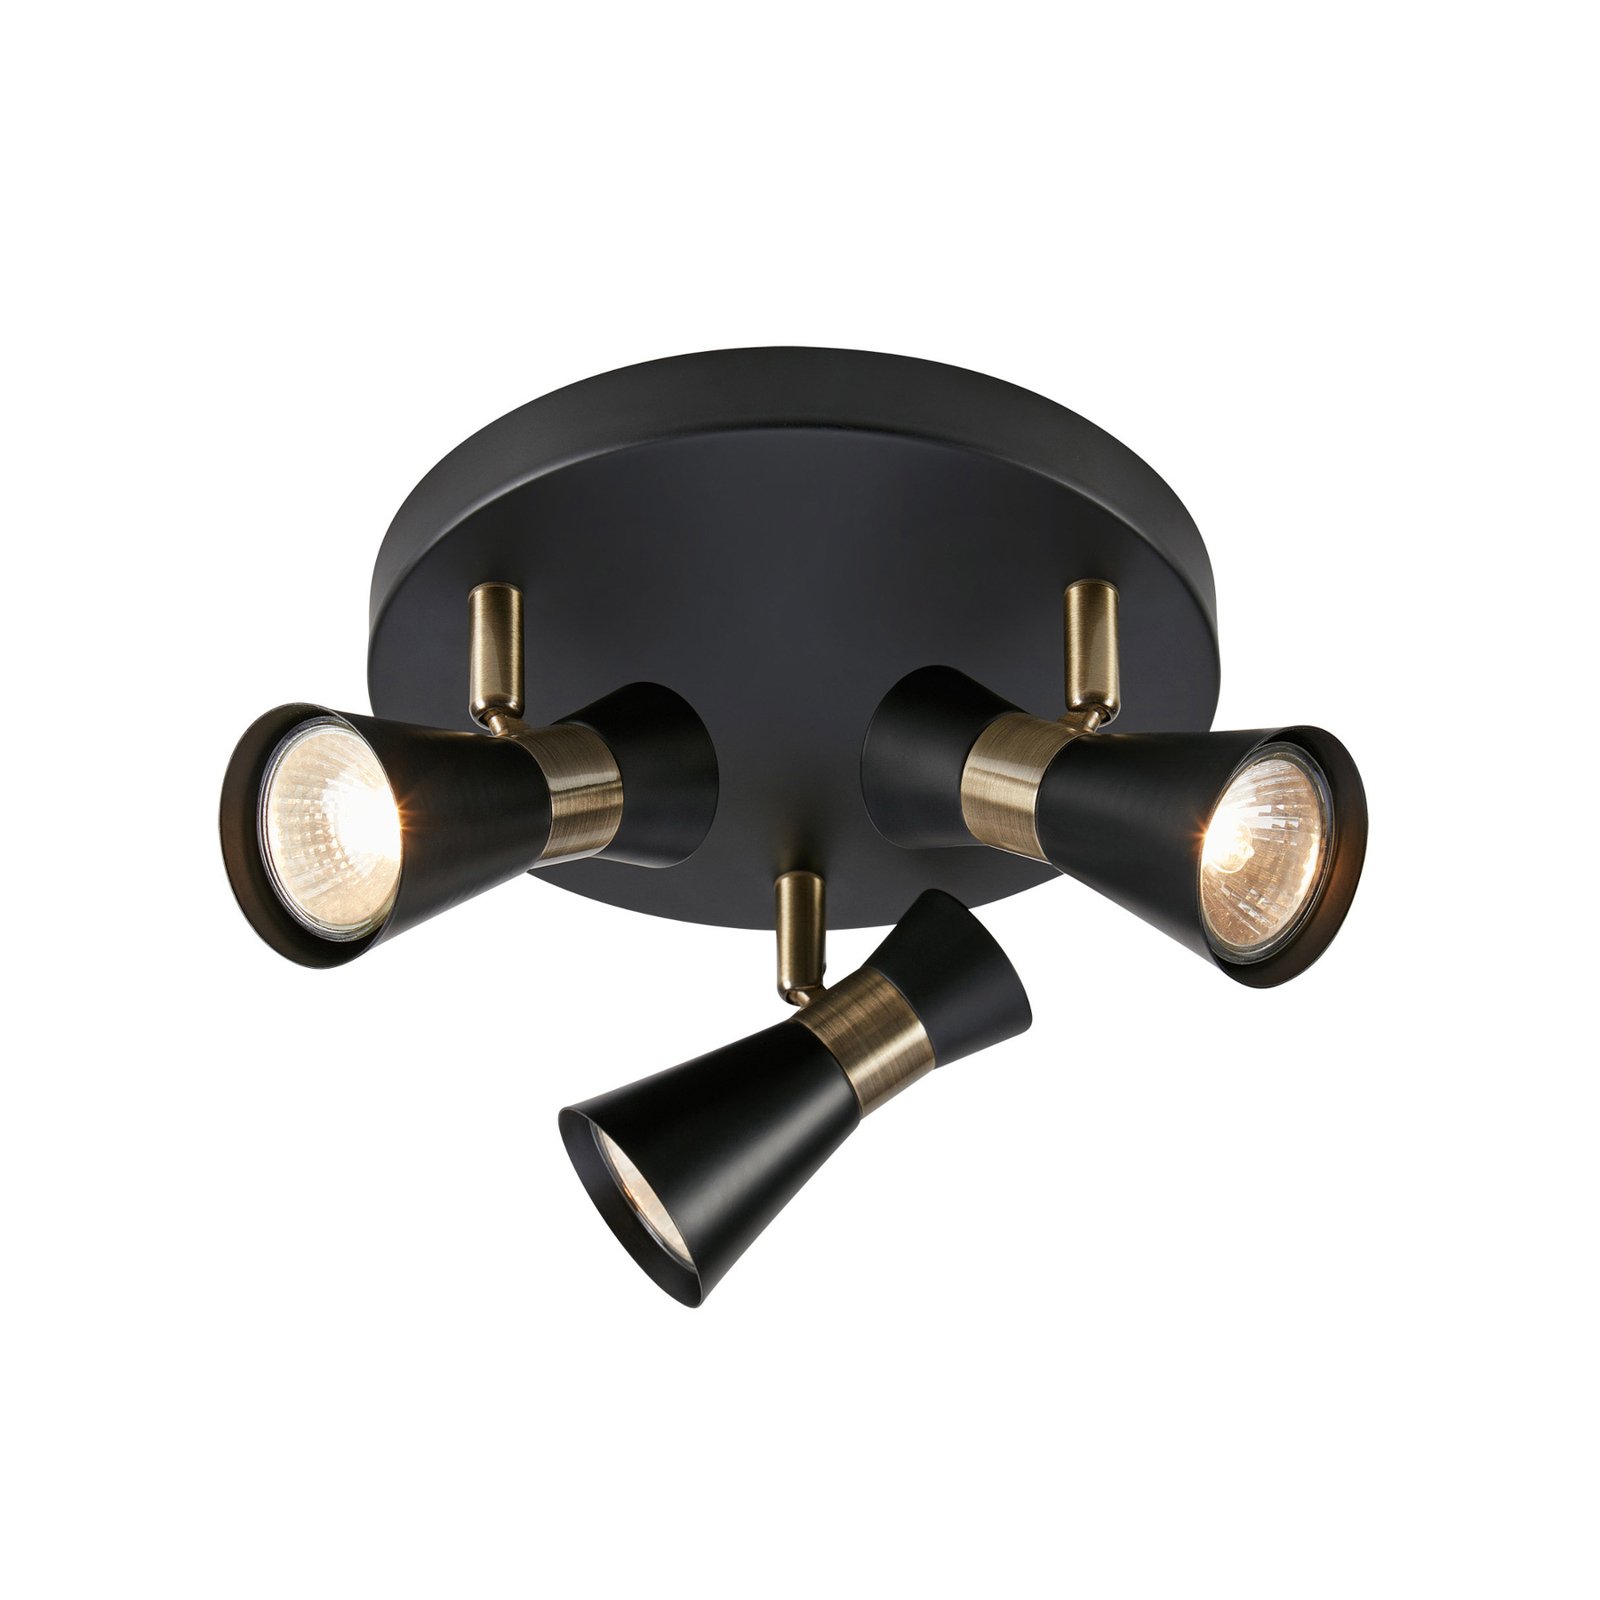 Folie ceiling light, 3-bulb, black/brass